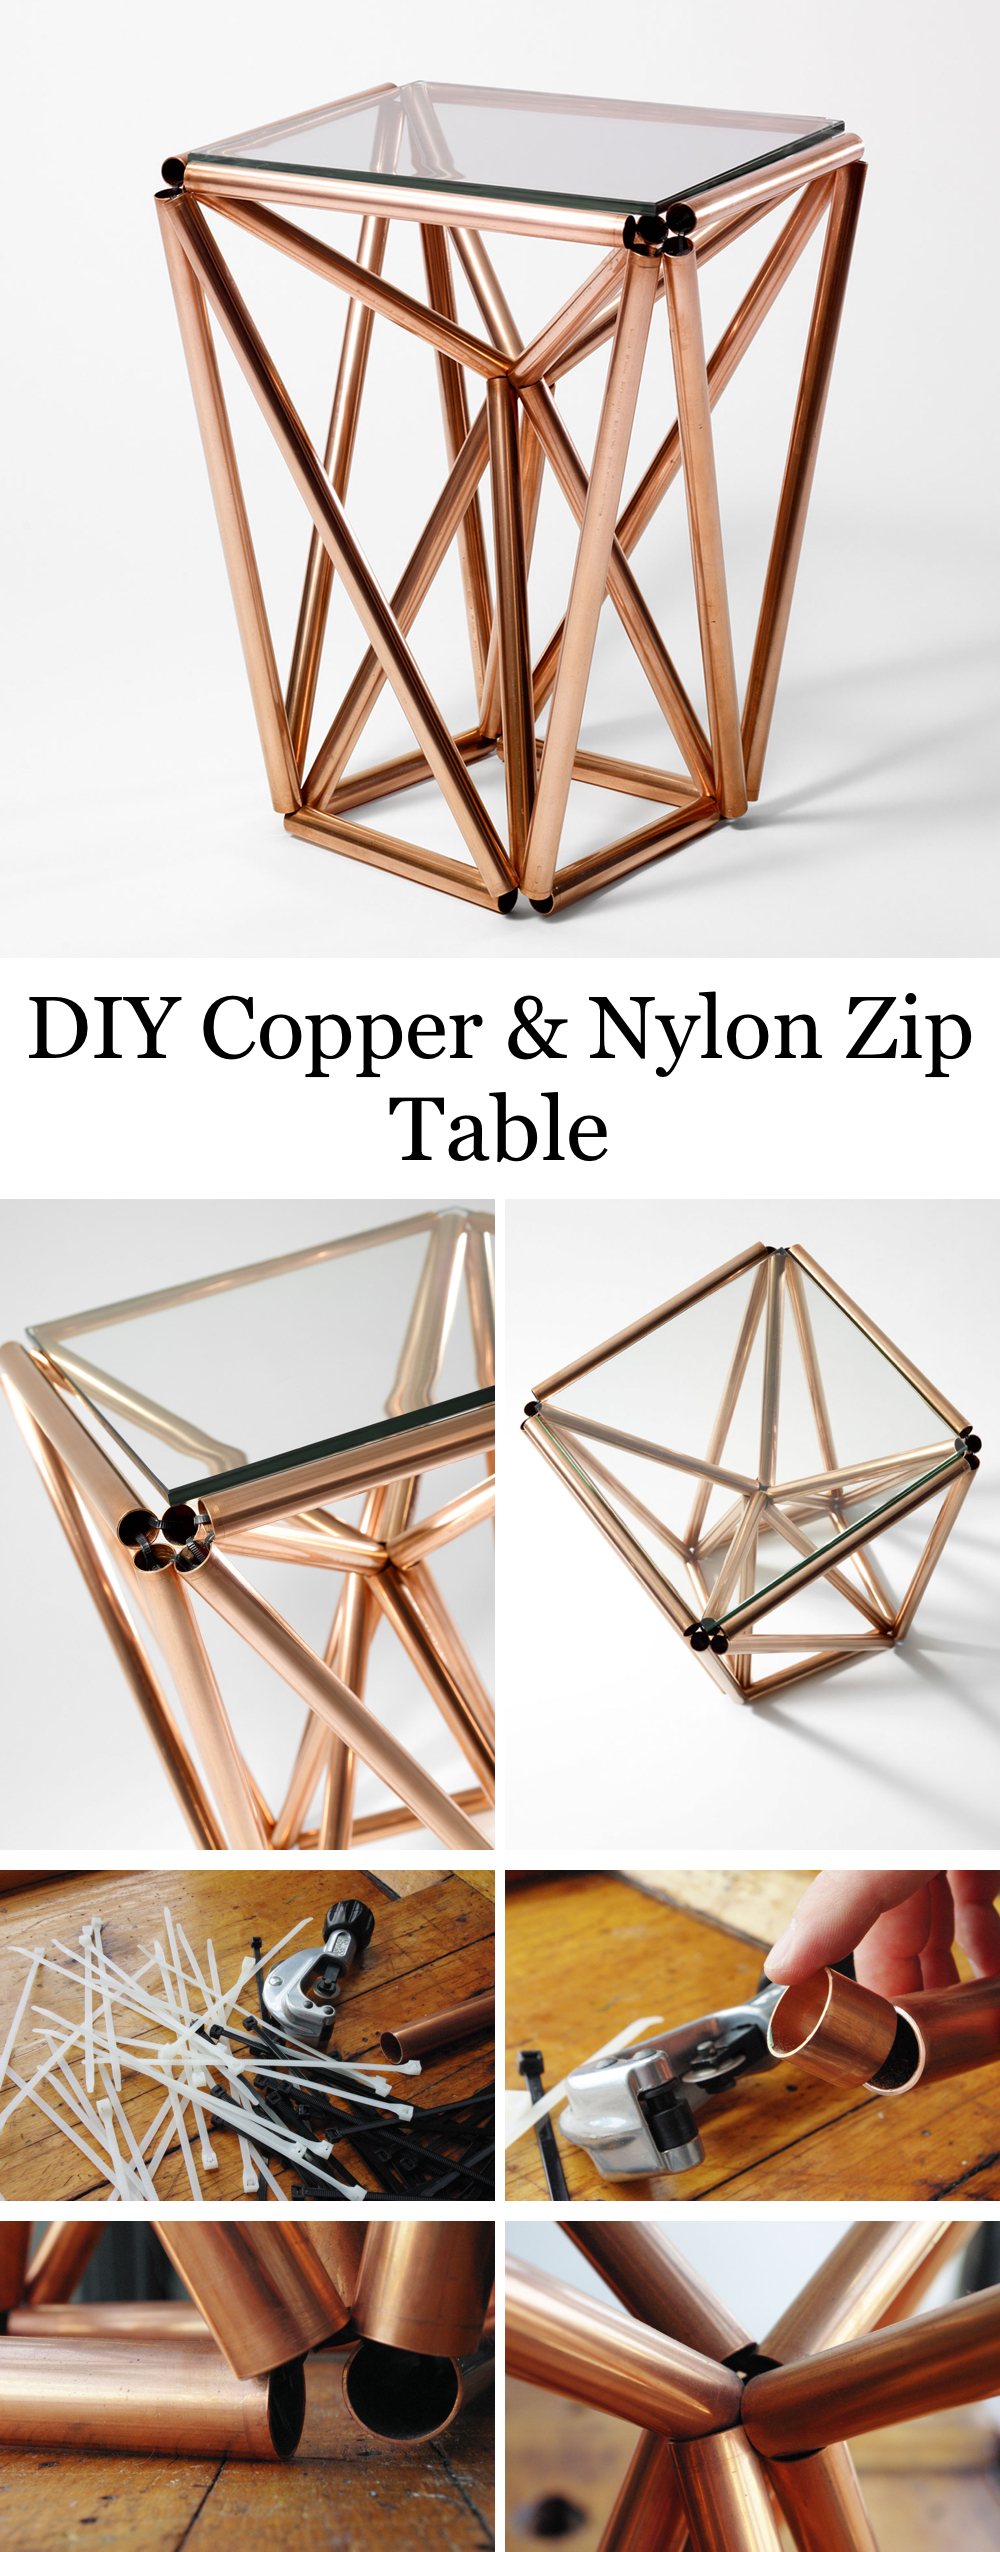 DIY Copper Pipe & Nylon Zip Table